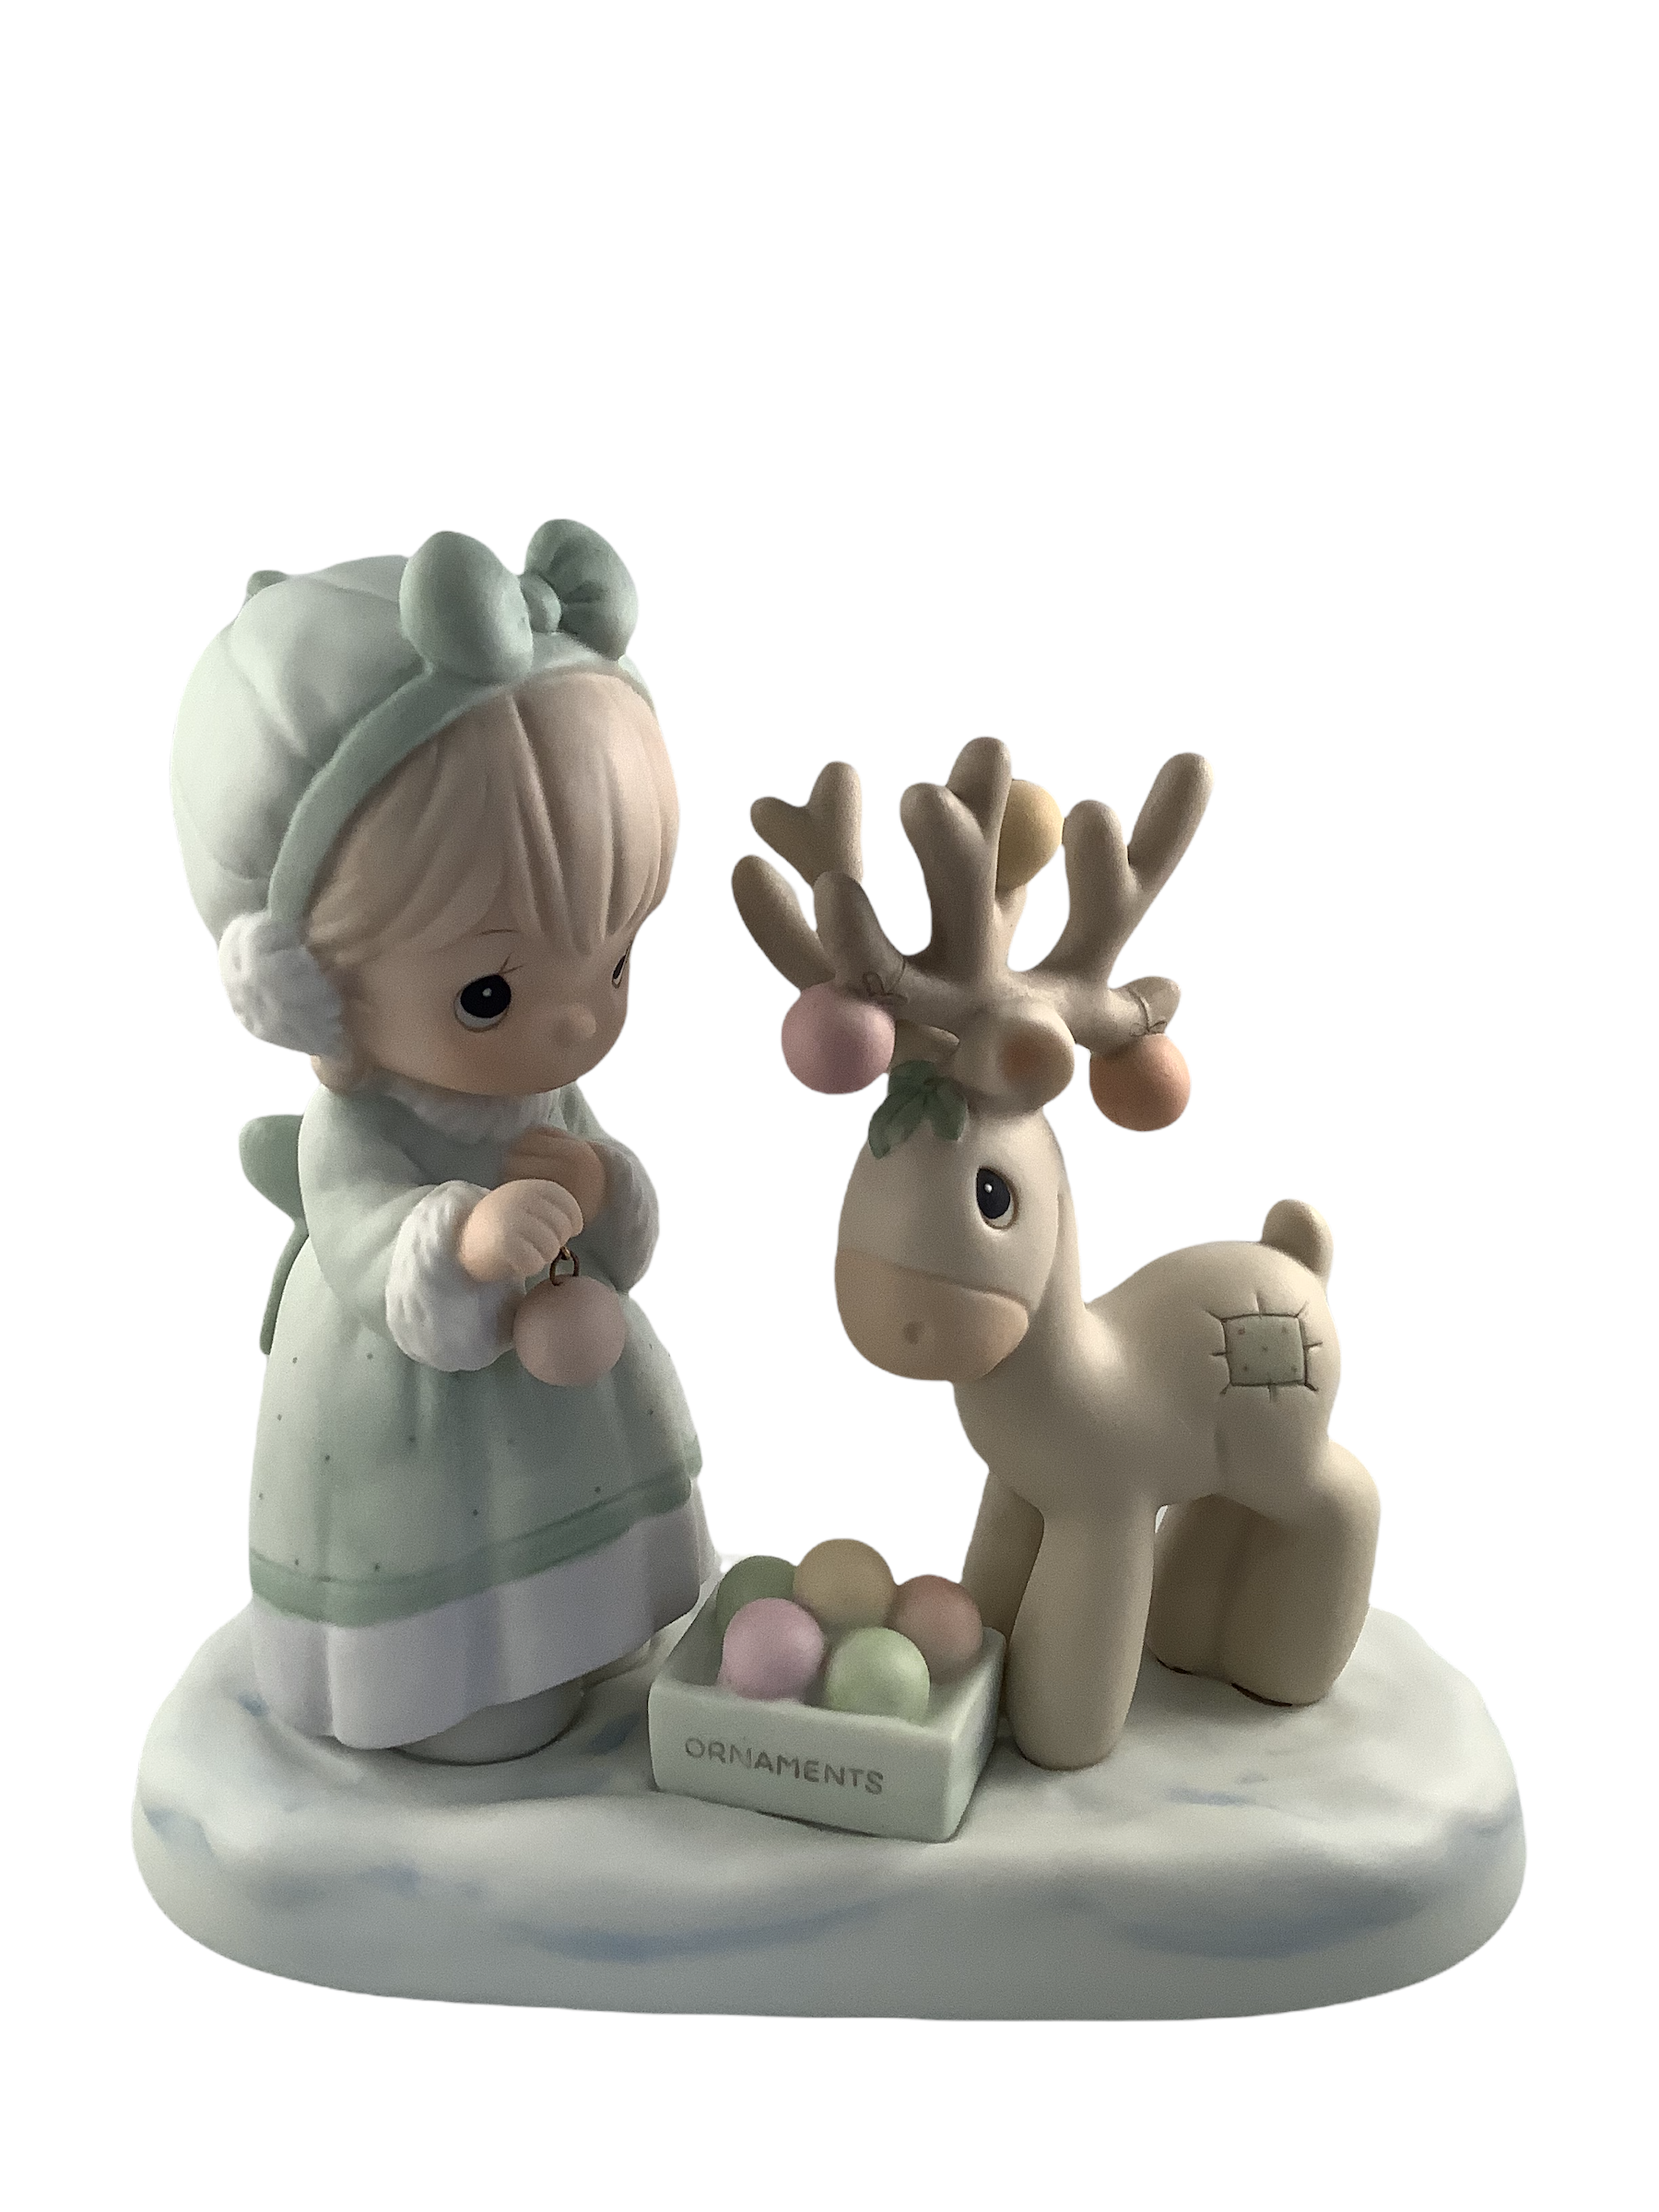 Merry Christmas Deer - Precious Moment Figurine